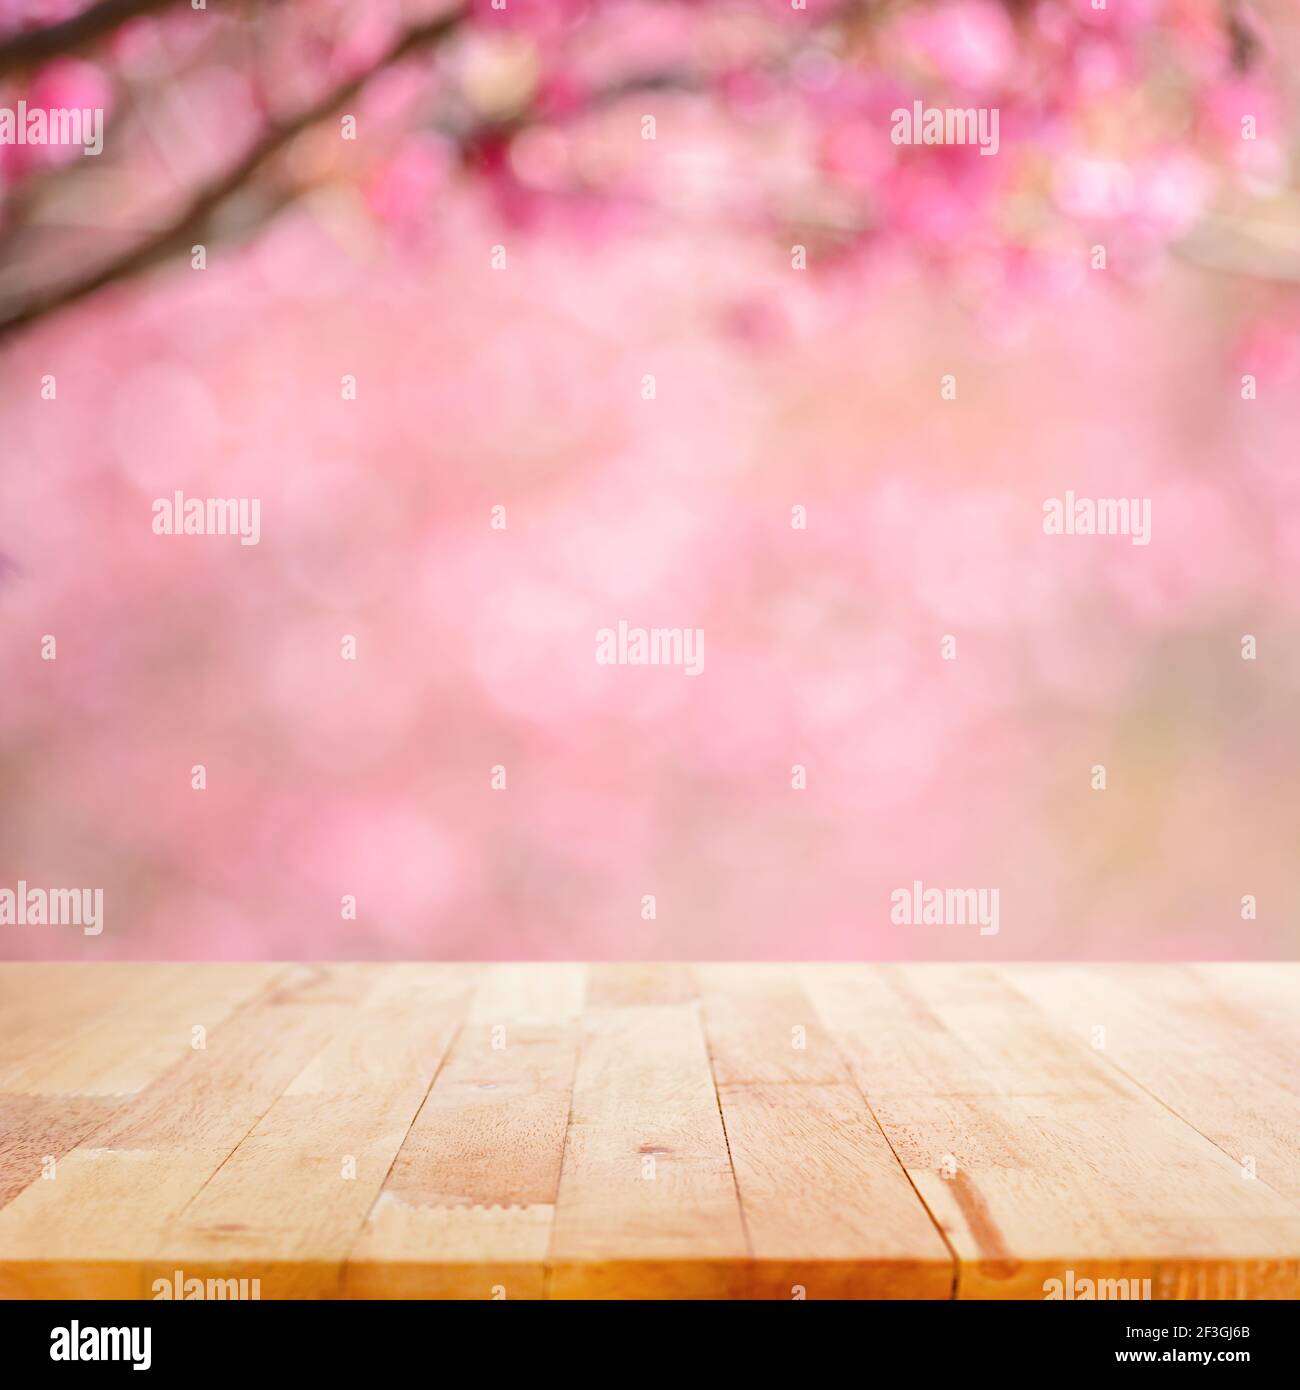 Holztischplatte auf verschwommenem Hintergrund von rosa Kirschblüte Blume - kann für die Anzeige oder Montage Ihrer Produkte verwendet Stockfoto